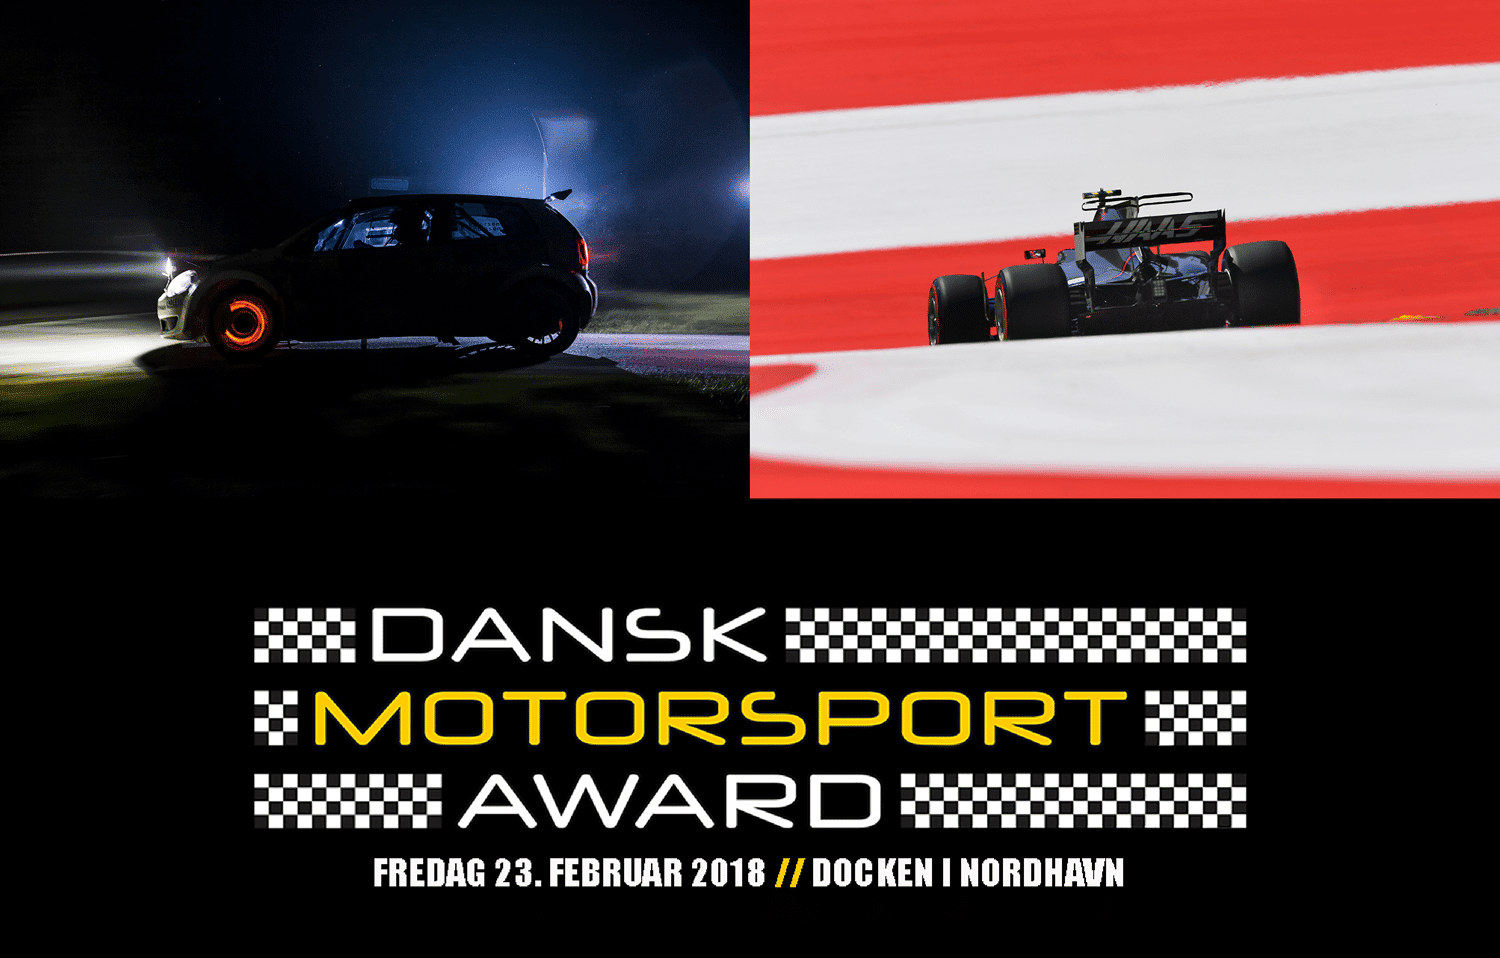 Årets Motorsportsfotograf kåres til Dansk Motorsport Award 2018